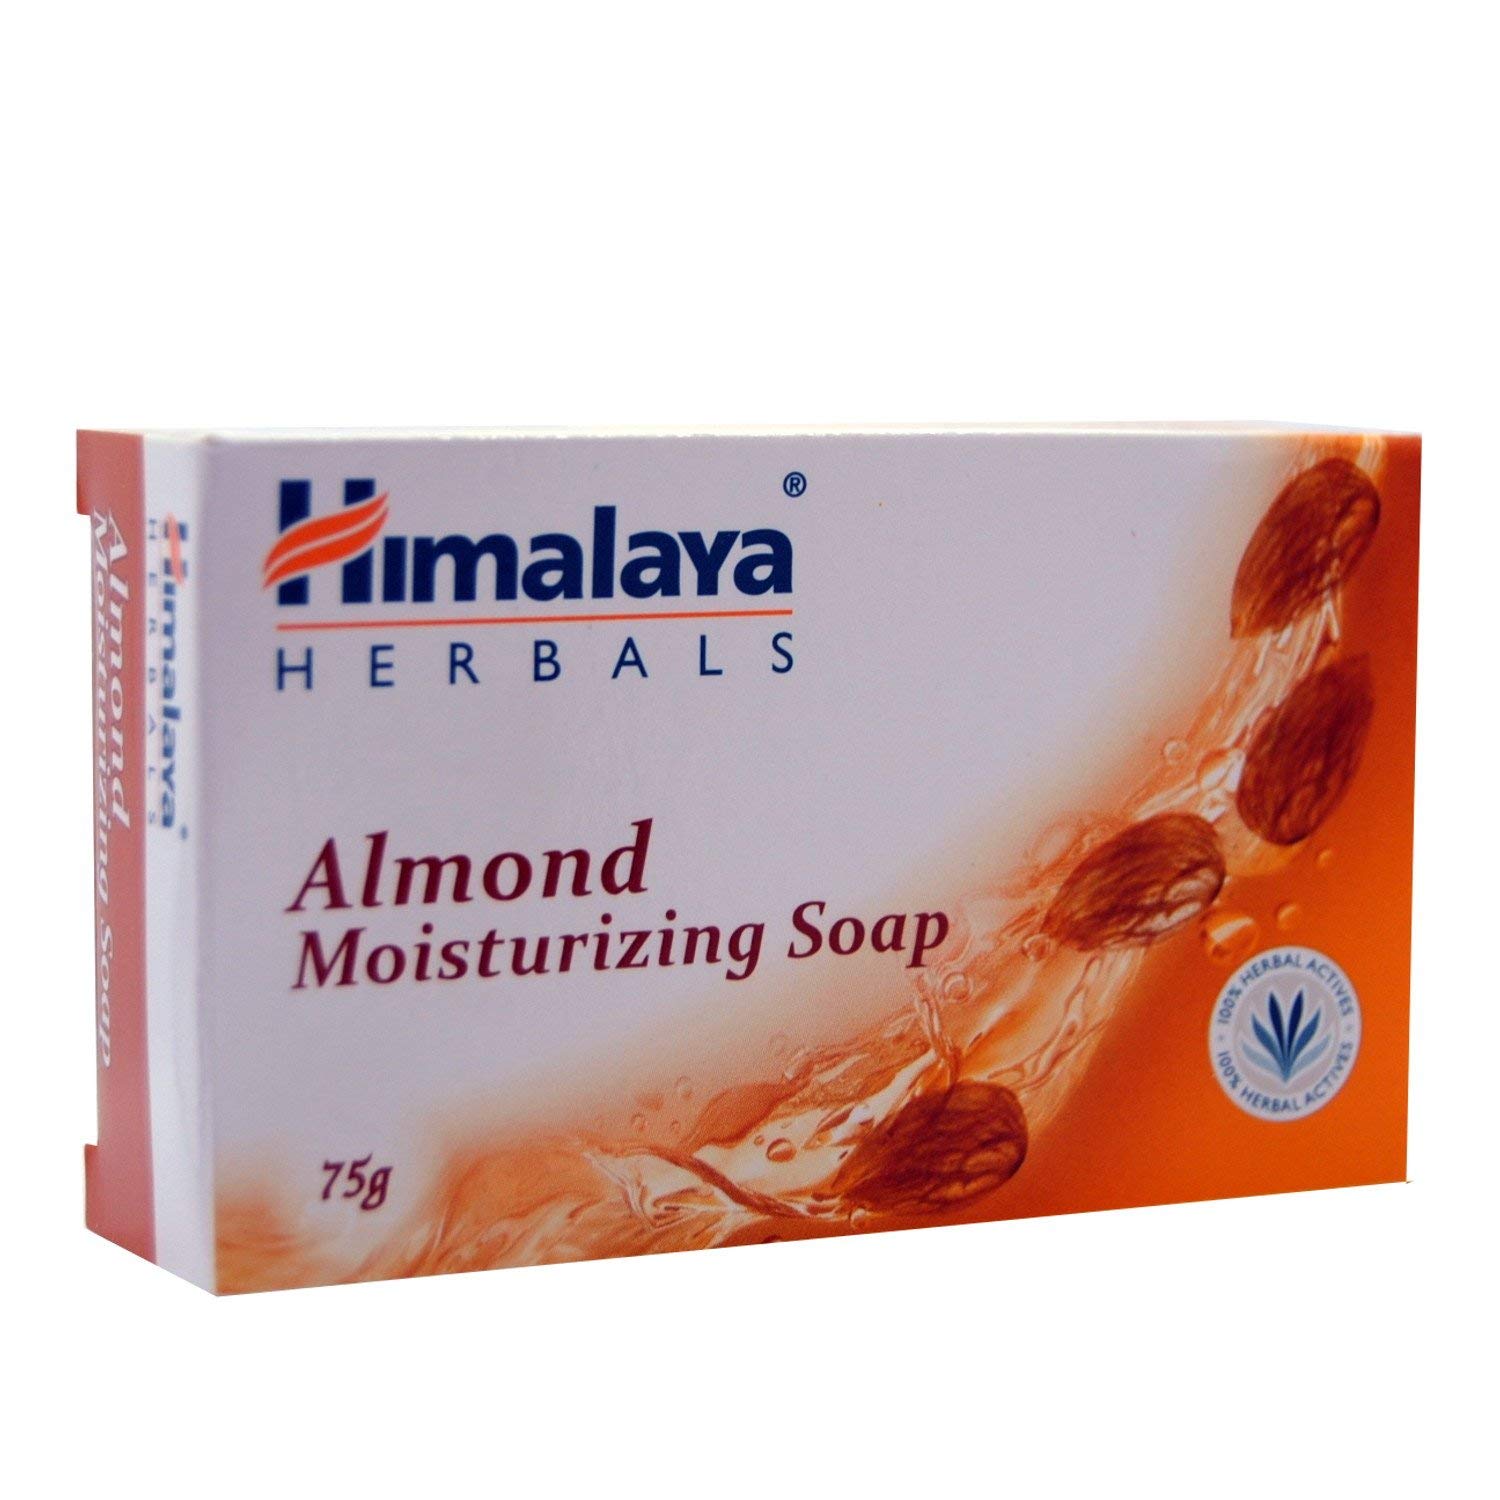 Bild von Himalaya Herbals Almond Moisturizing Soap